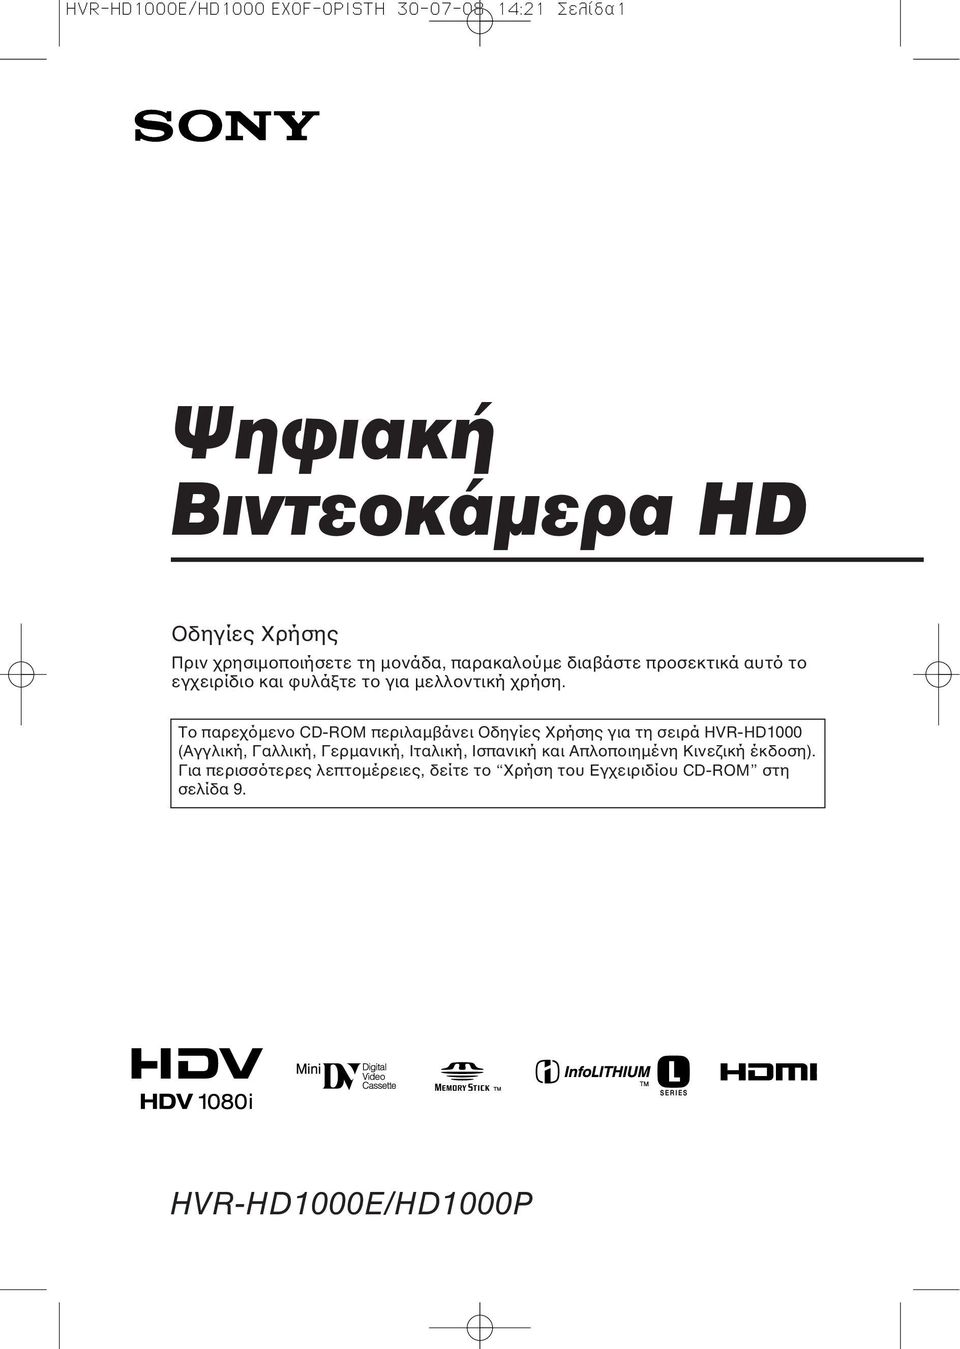 Το παρεχόμενο CD-ROM περιλαμβάνει Οδηγίες Χρήσης για τη σειρά HVR-HD1000 (Αγγλική, Γαλλική, Γερμανική, Ιταλική,